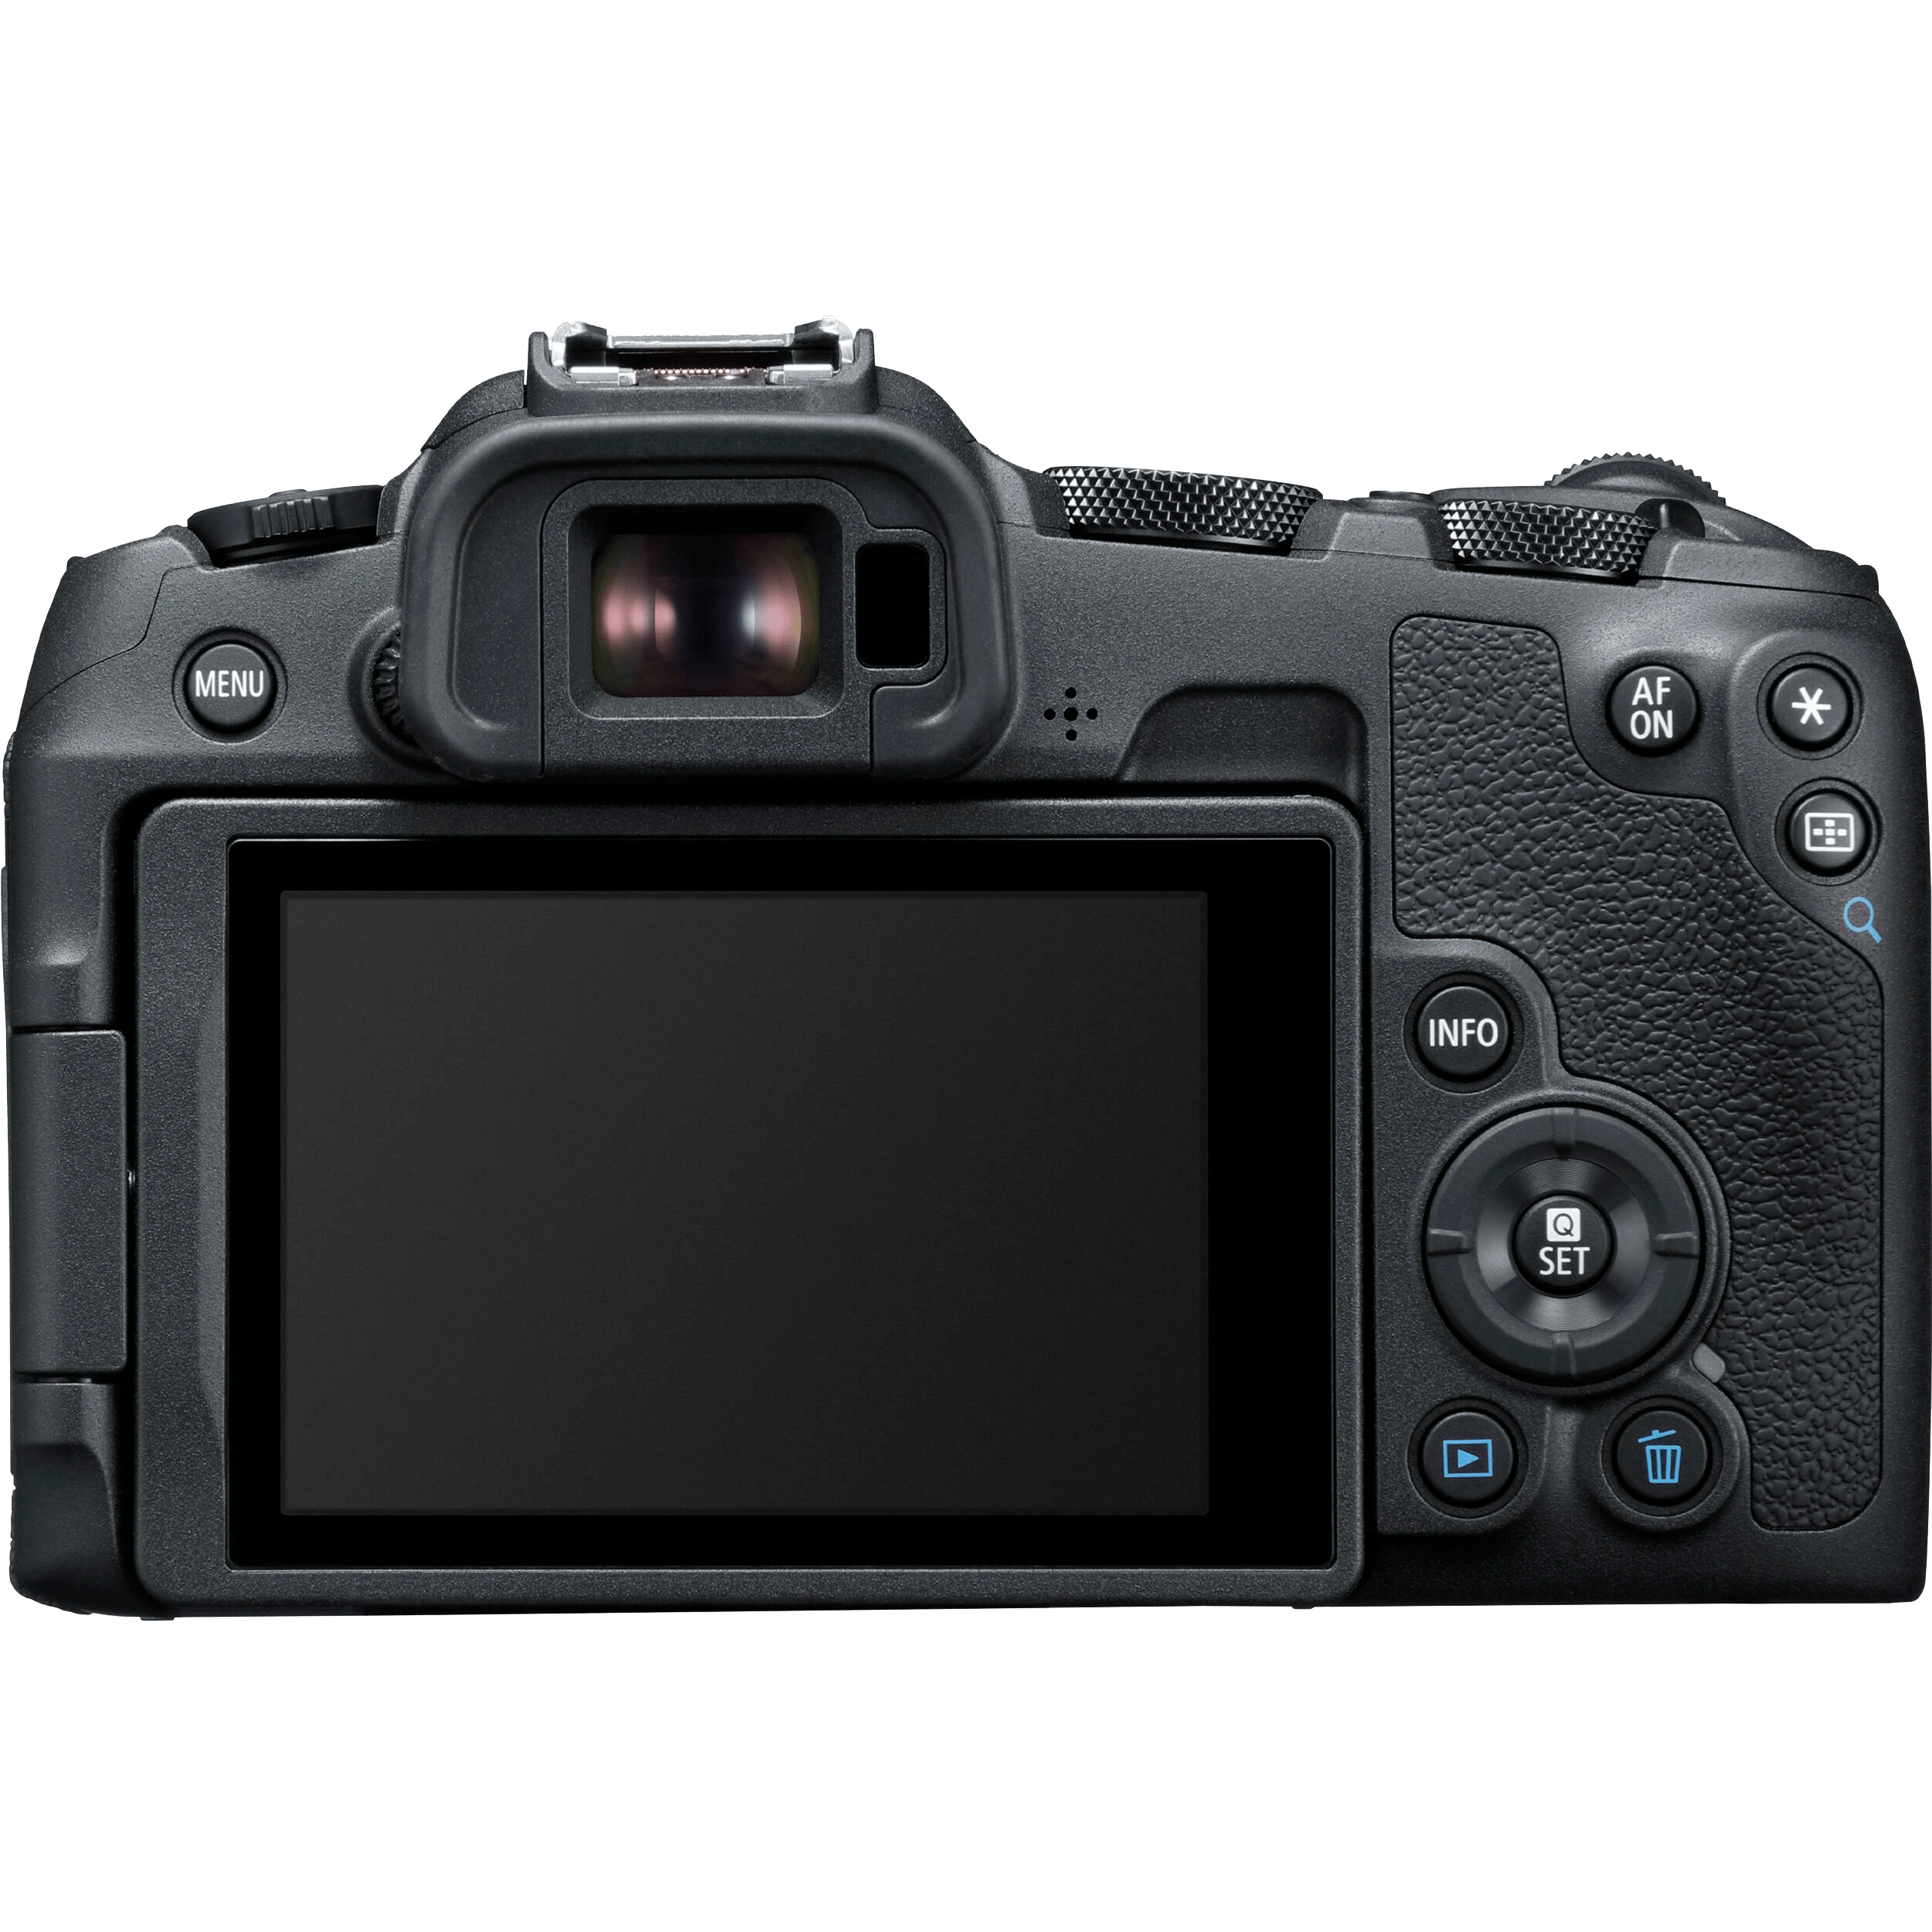 מצלמה דיגיטלית ללא מראה הכוללת עדשה Canon EOS R8 RF 24-50mm f/4.5-6.3 IS STM - צבע שחור שלוש שנות אחריות ע